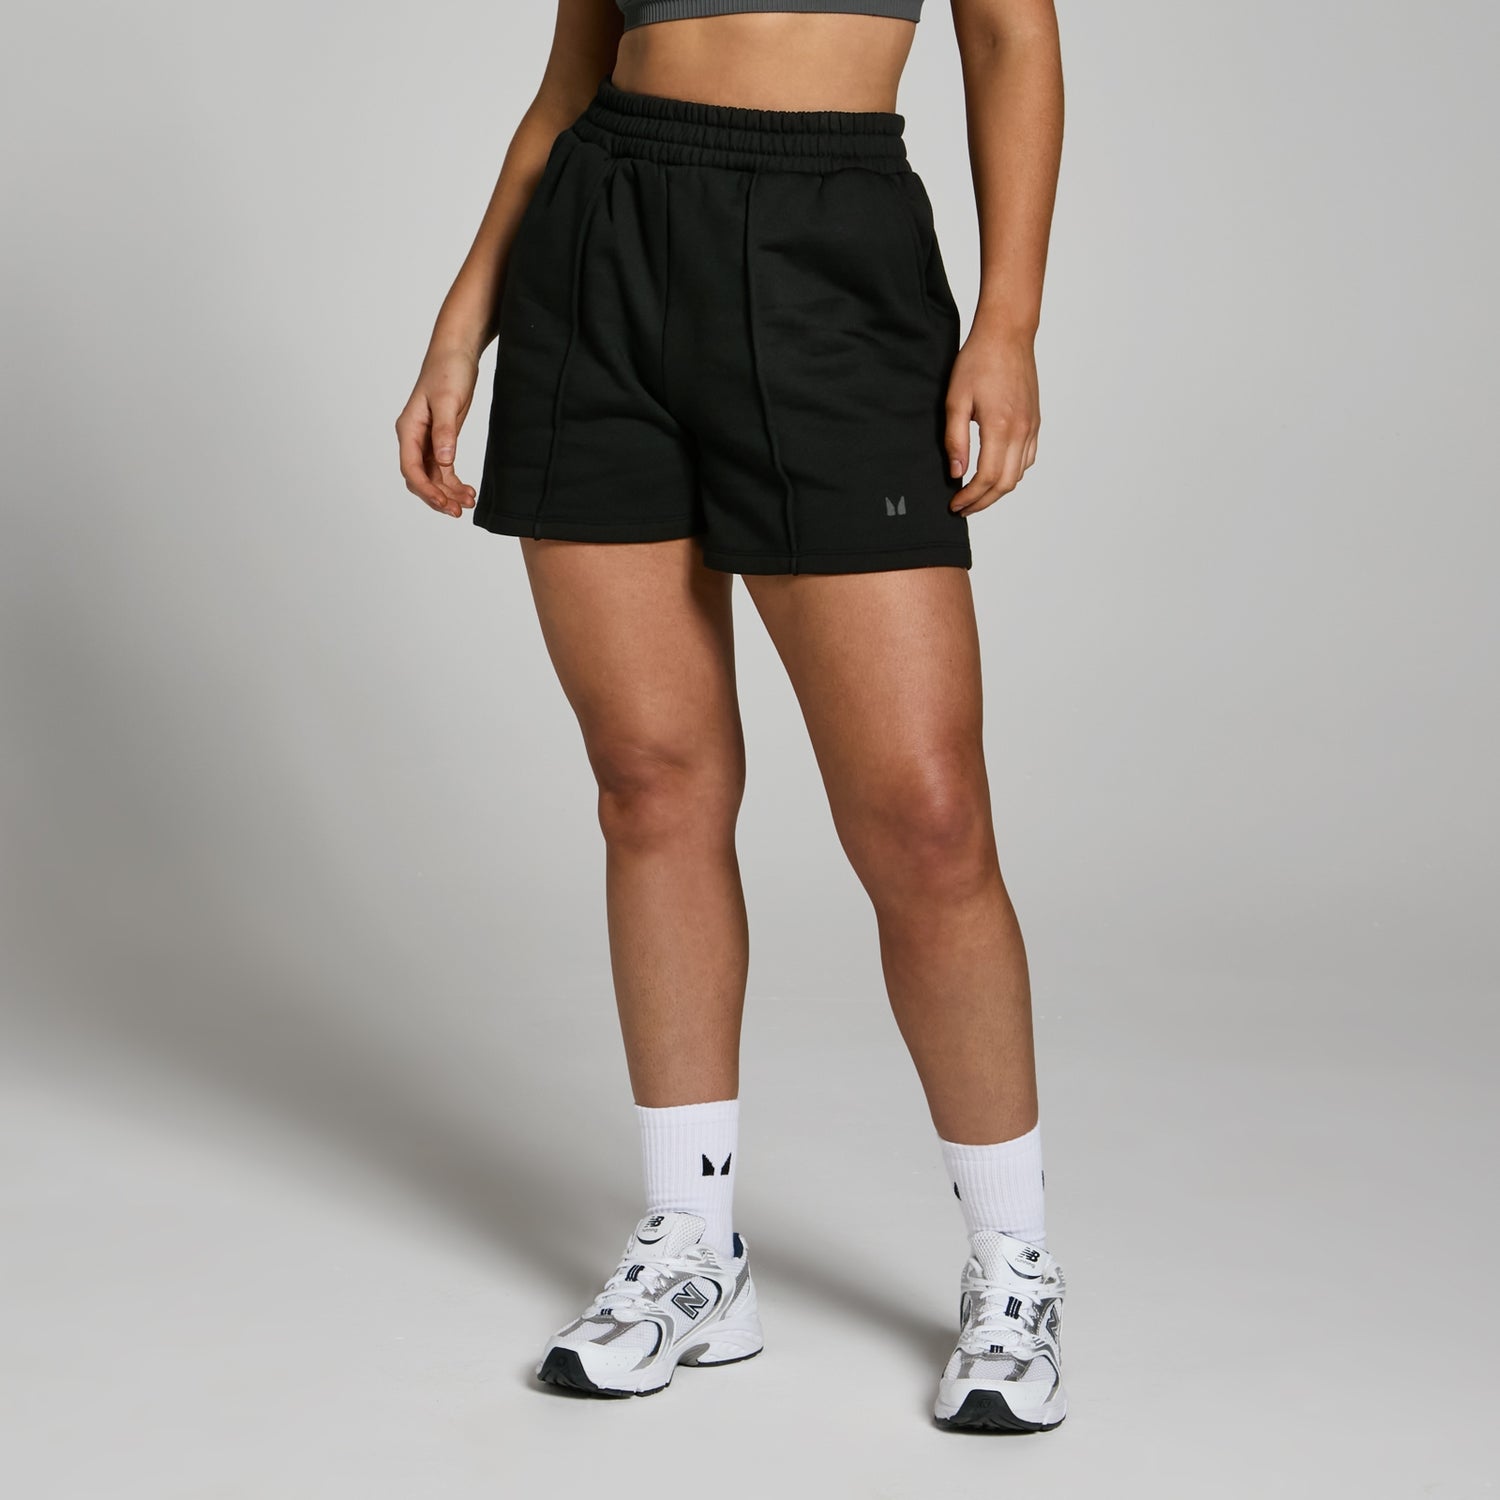 Женские спортивные шорты MP Lifestyle из плотной ткани — черный цвет  - XS